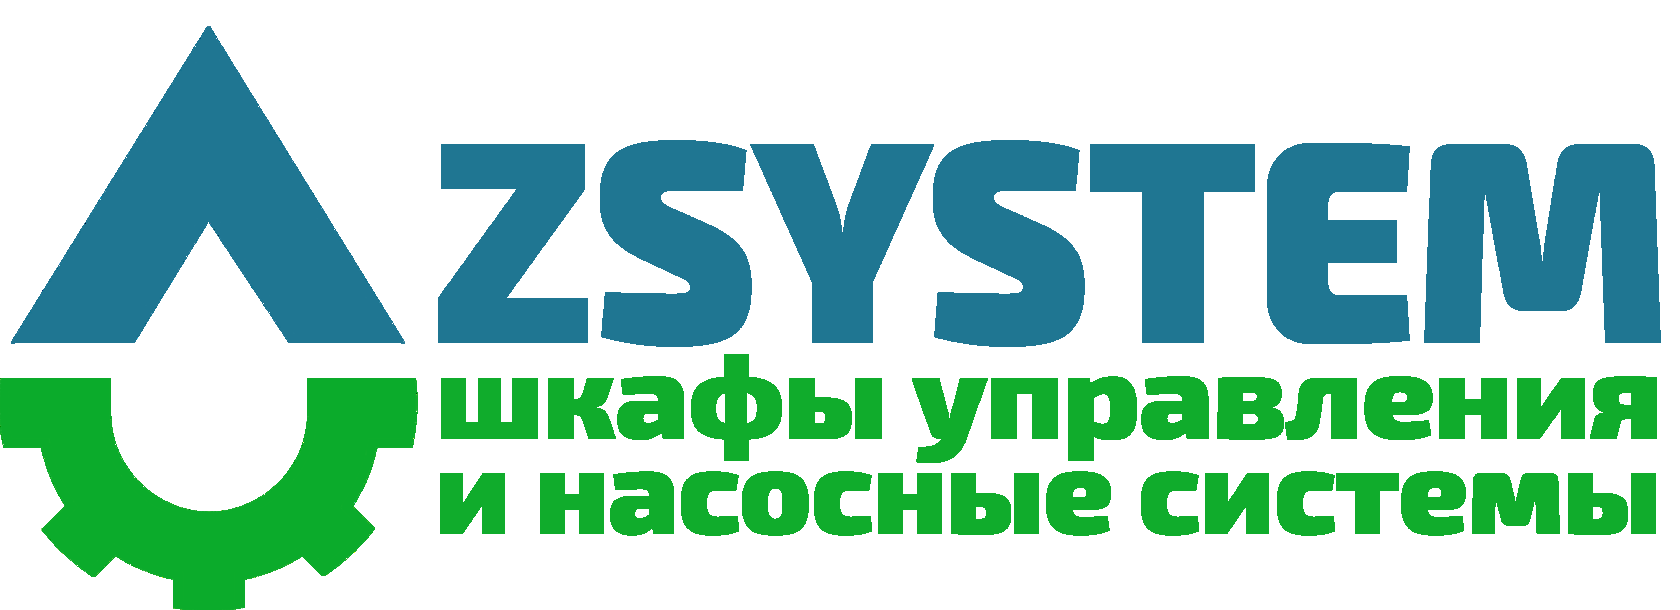 ZSYSTEM: шкафы управления и насосные системы